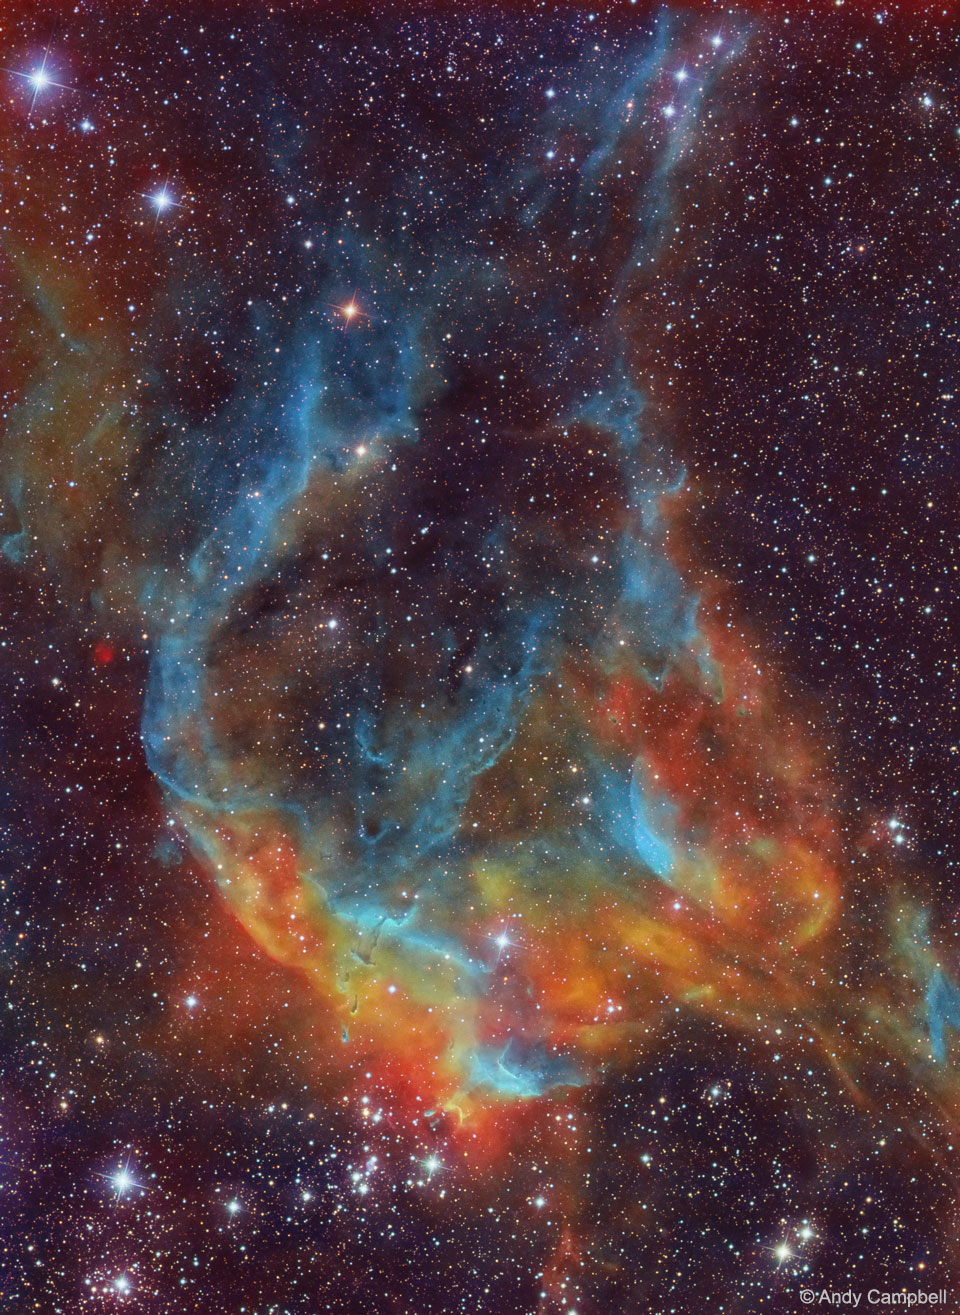 Im Bild leuchten Nebelranken in mattem Blau und hellerem Orangerot. Unten ist ein Sternhaufen, im Hintergrund sind viele kleine Sterne verteilt.